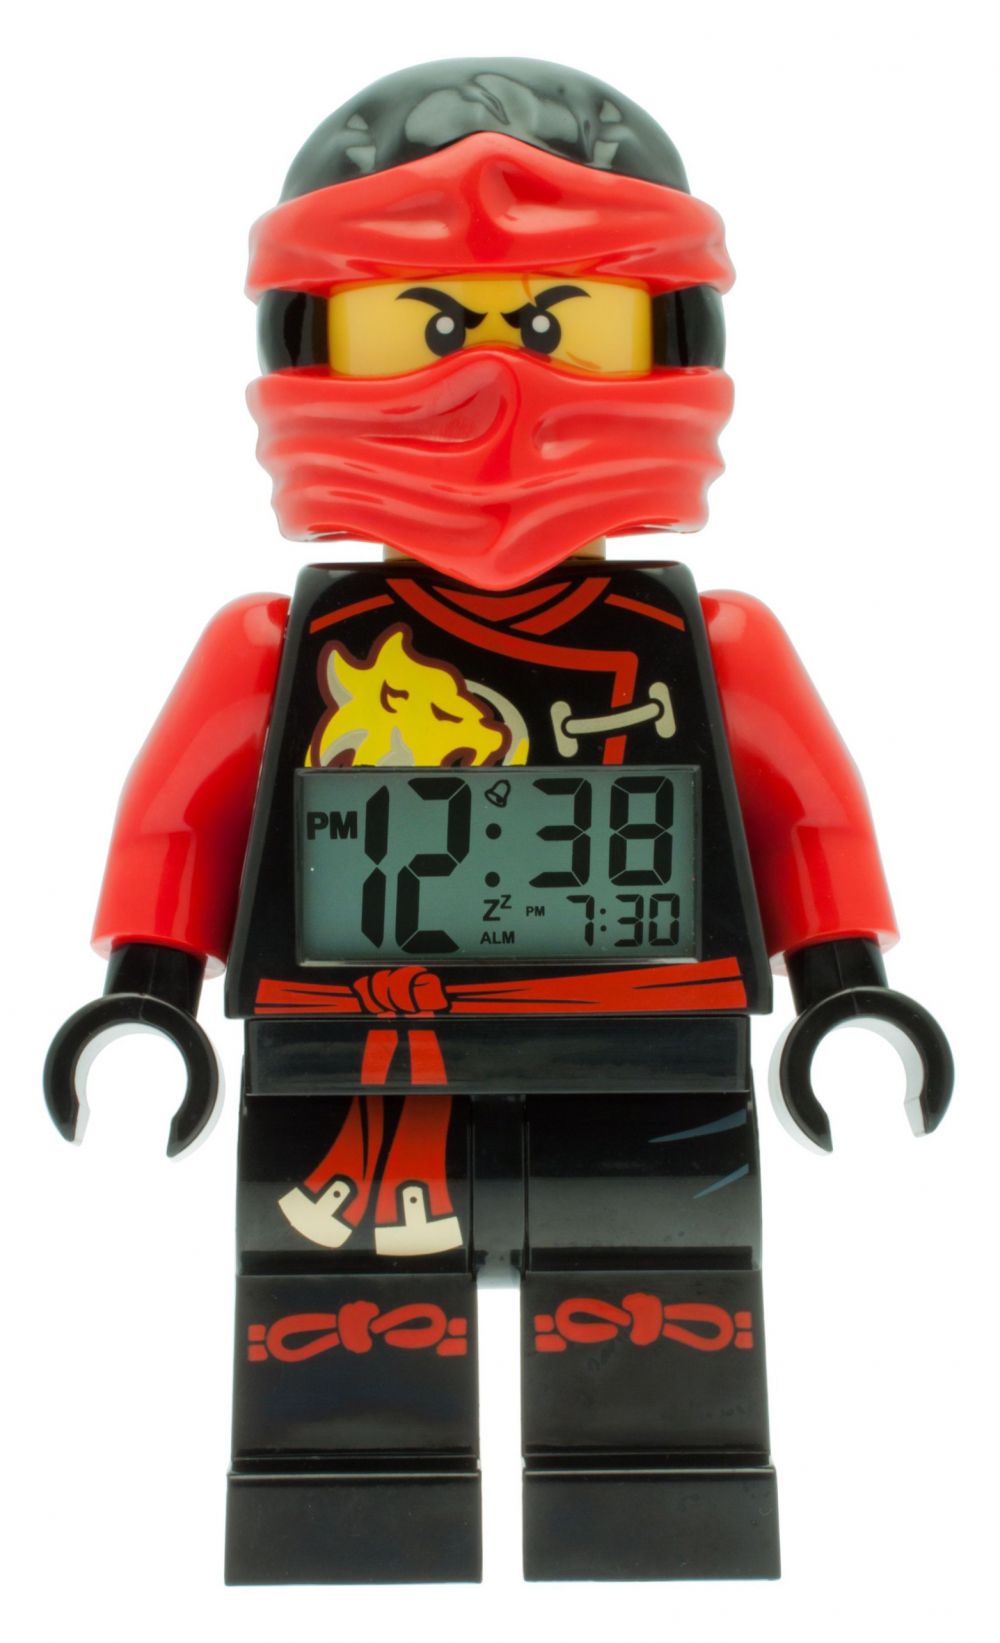 LEGO Horloges & Réveils 5005121 pas cher, Réveil LEGO Kai